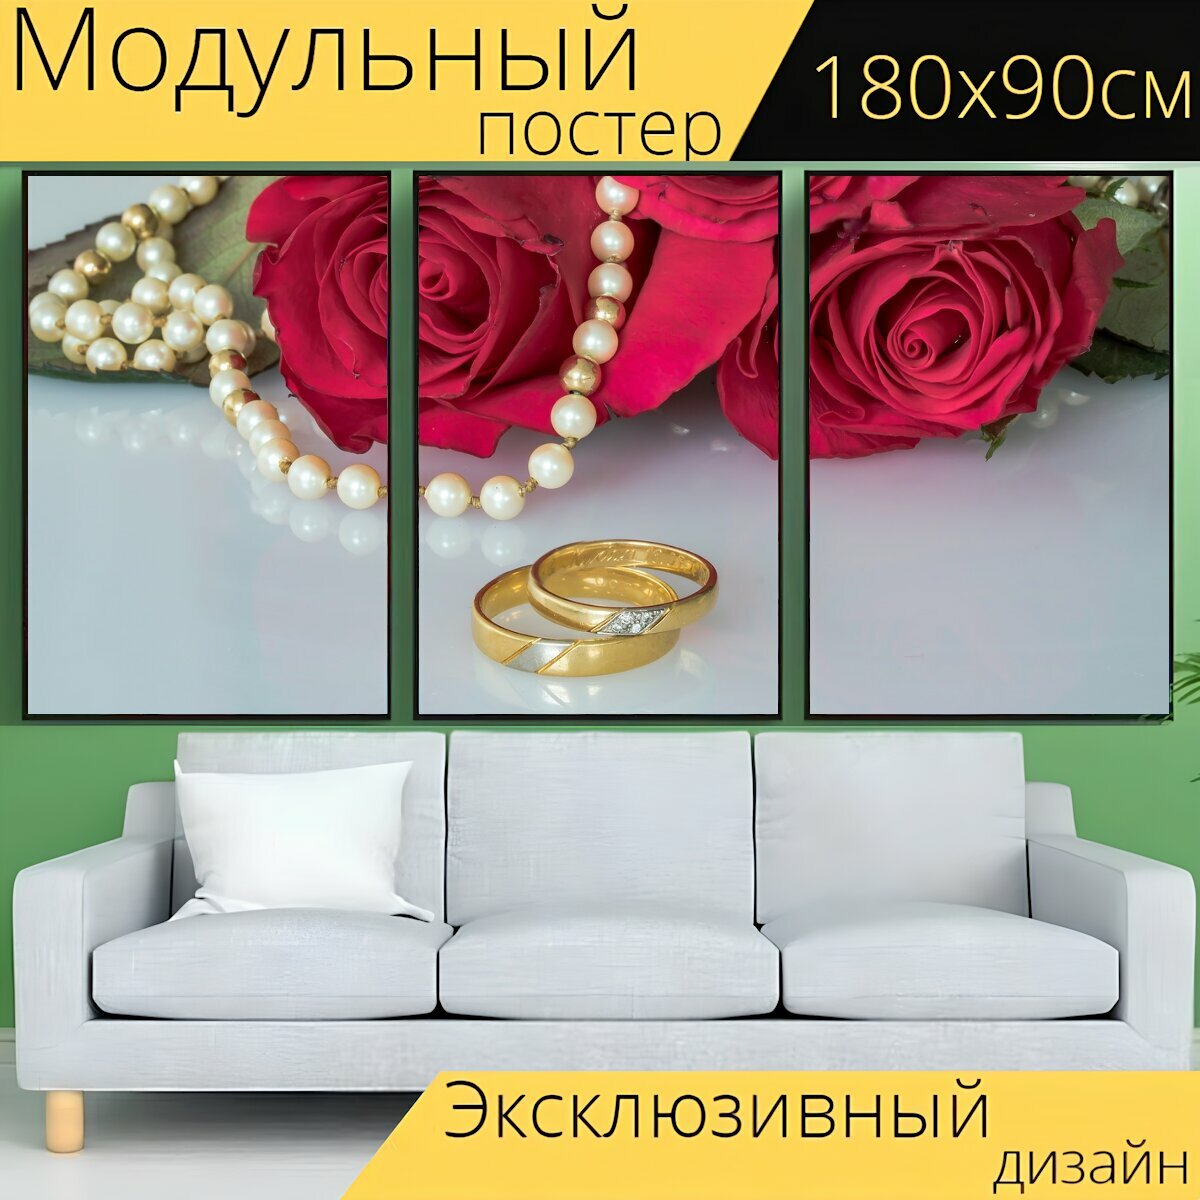 Модульный постер "Свадебные кольца, кольца, золотые кольца" 180 x 90 см. для интерьера